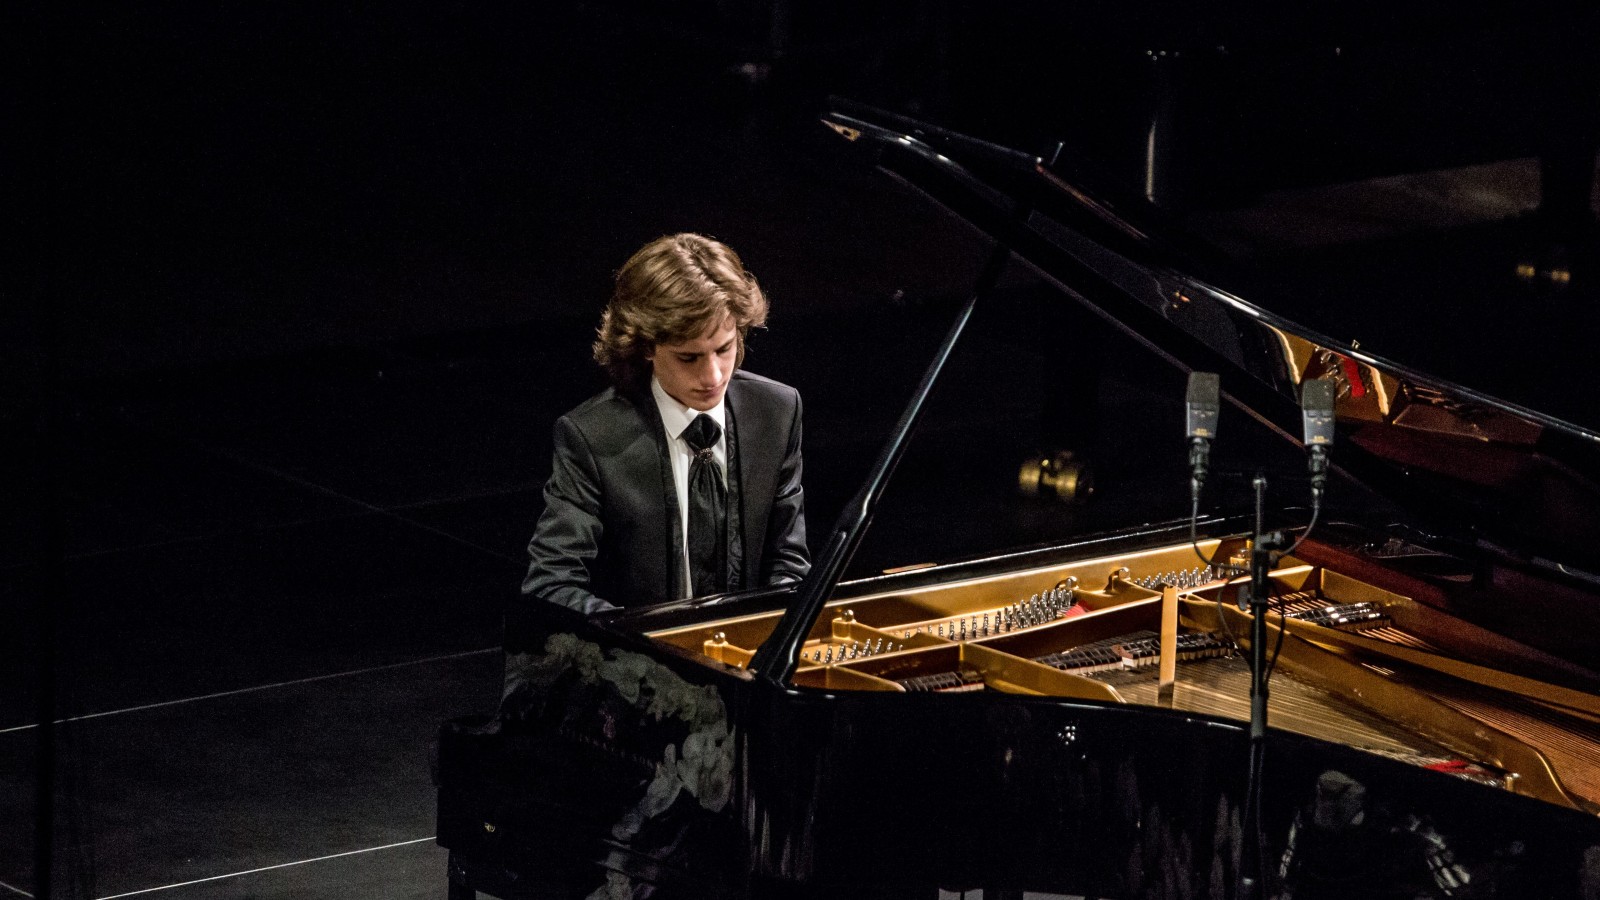 Conoce al joven pianista de Israel que asombra mundo - ISRAEL21c